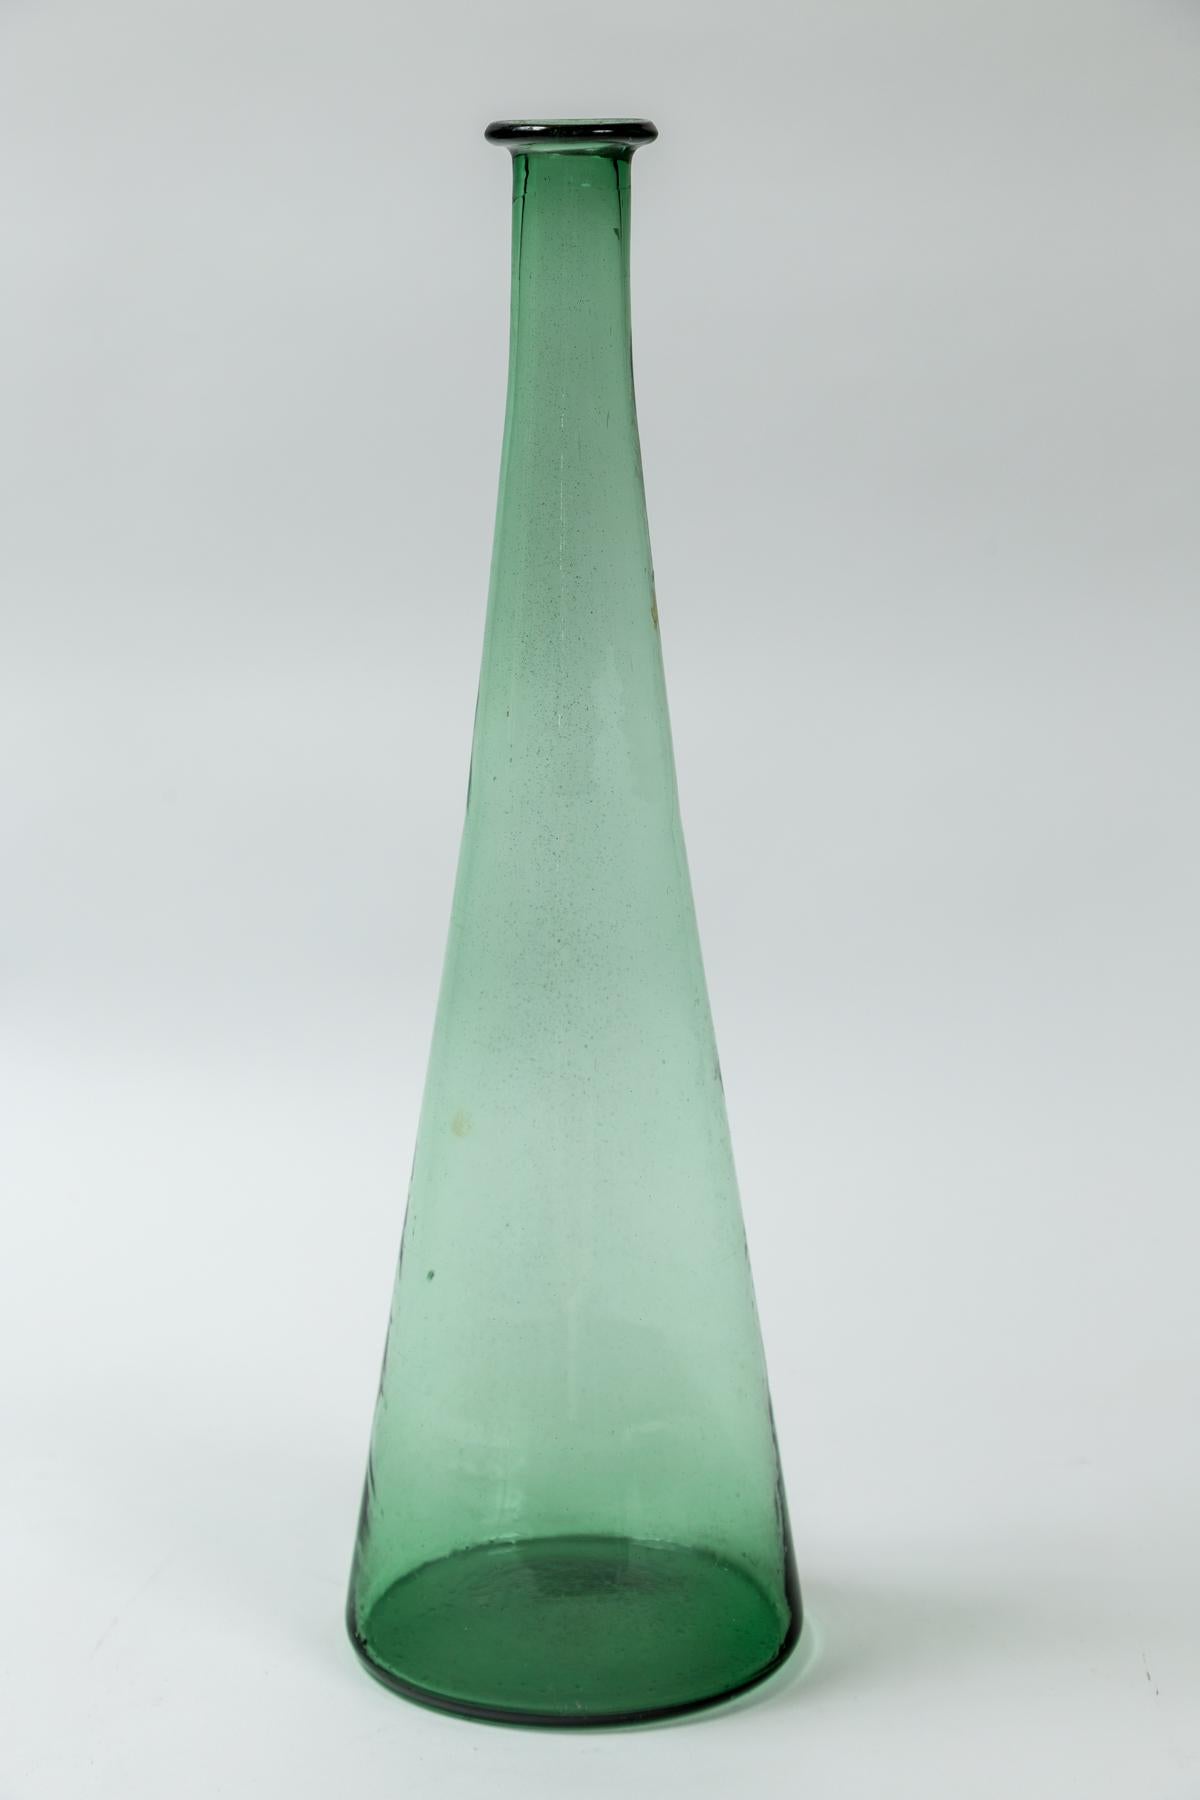 Grüne Glaskaraffe aus der Jahrhundertmitte, Empoli, Italien. Hohe, konisch zulaufende Glaskaraffe. Handgeblasenes Glas in der charakteristischen grünen Farbe, die Empoli verwendet.